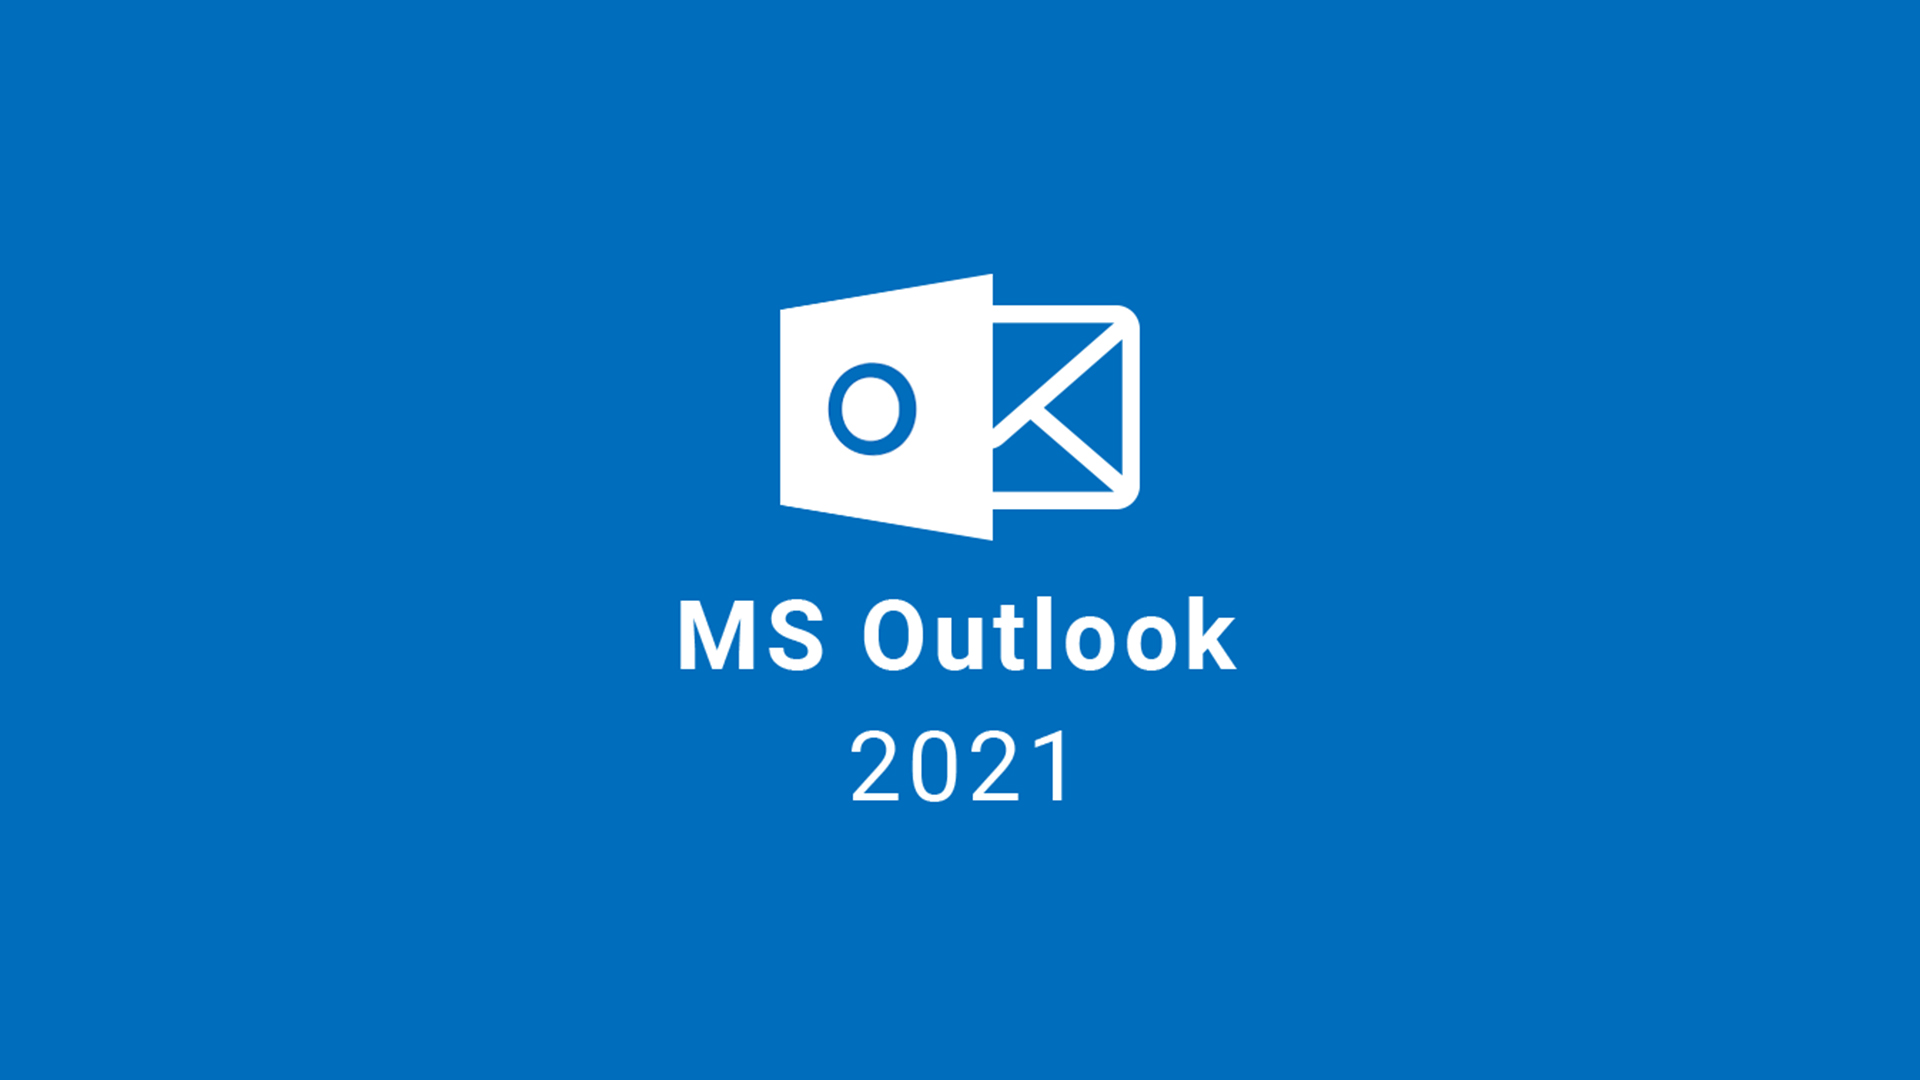 MS Outlook 2021 CD Key 26.49 usd